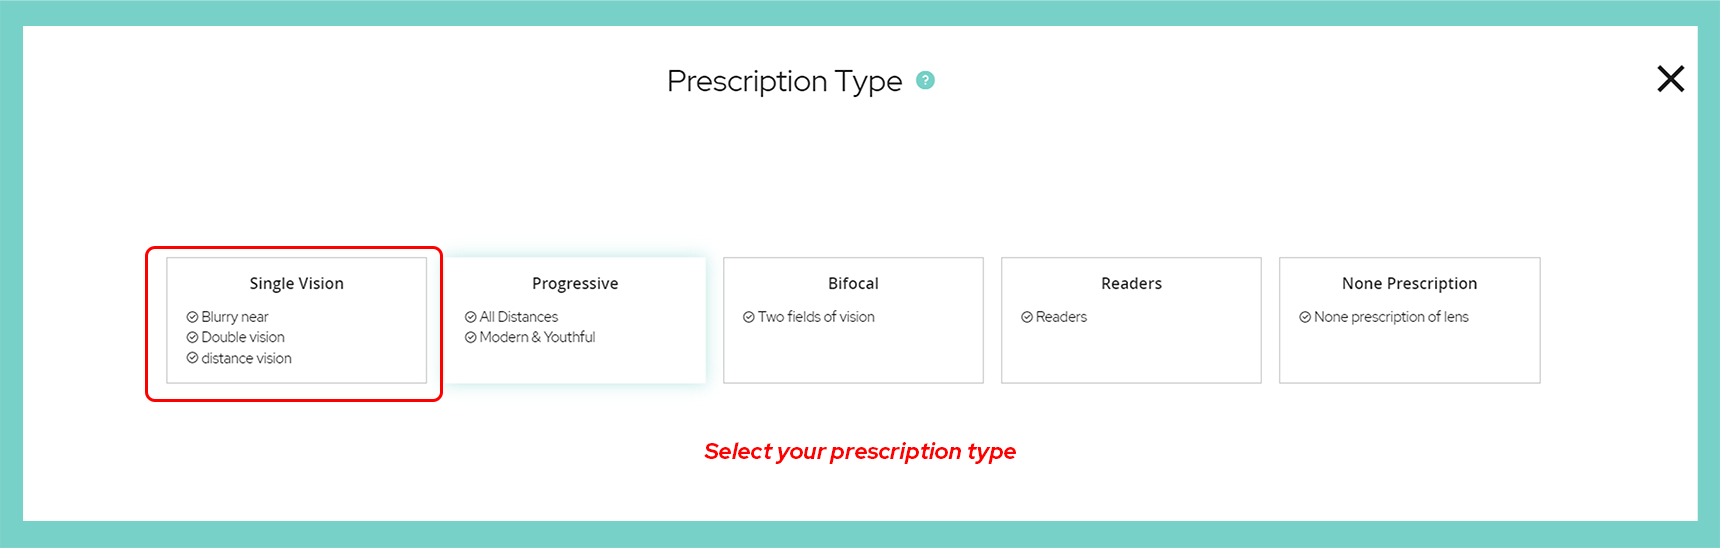 select your prescription type